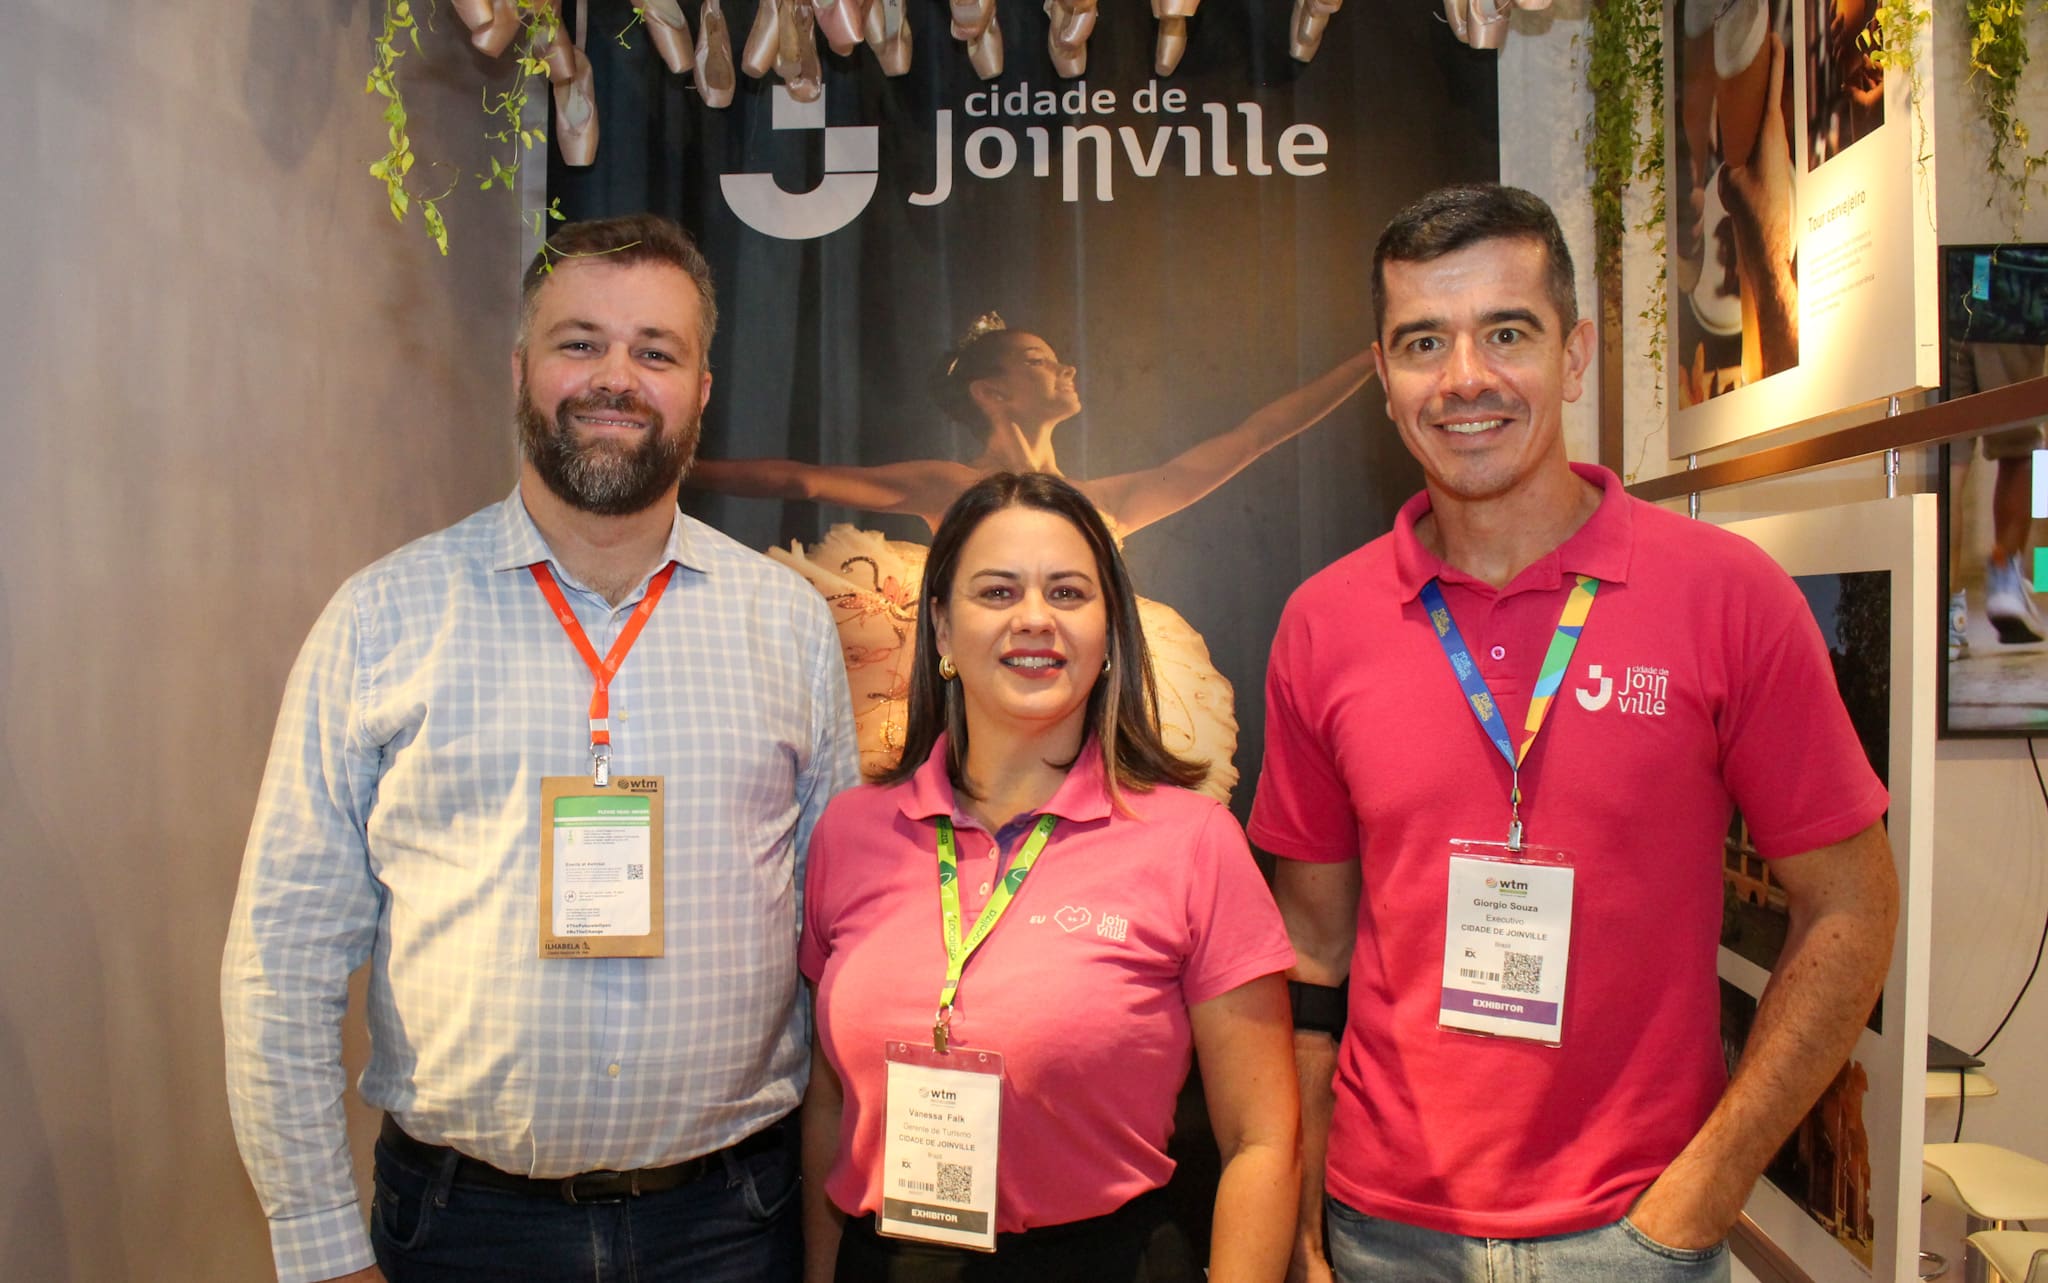 À esquerda Guilherme Gassenferth, secretário de turismo da cidade de Joinville, ao centro Vanessa Falk, gerente de turismo da cidade de Joinville e à direita Giorgio Souza, executivo da cidade de Joinville.